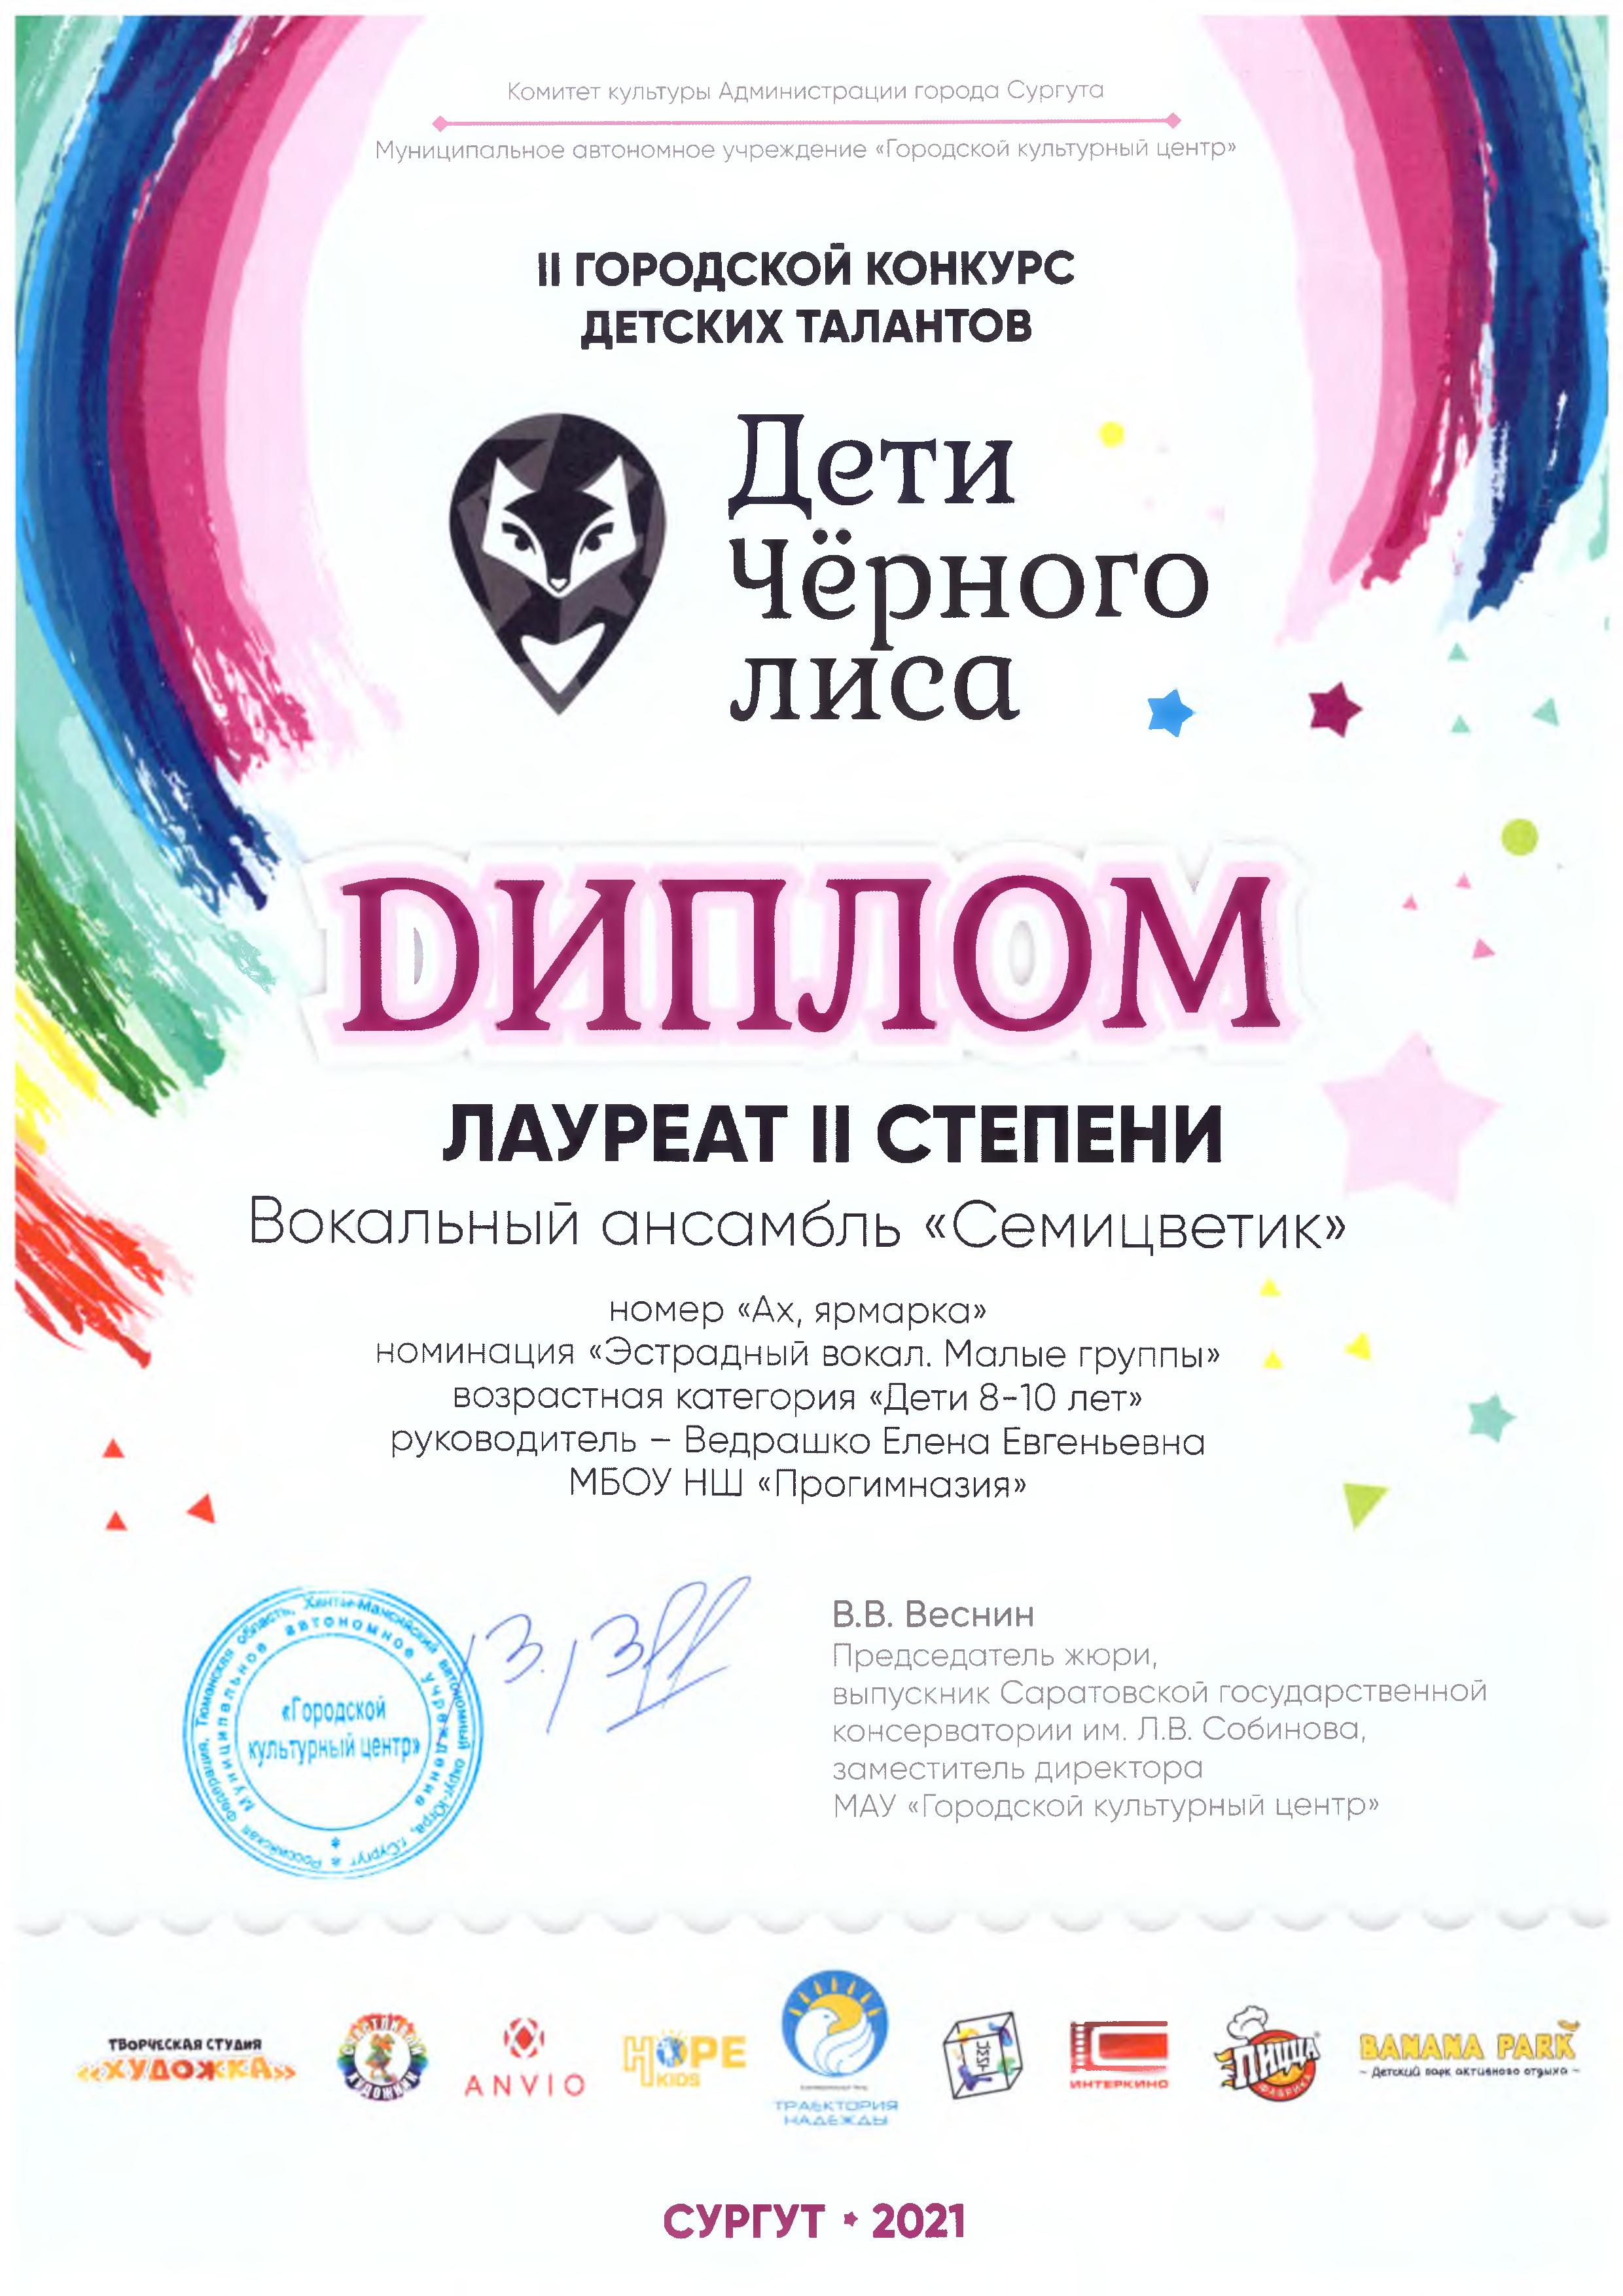 Диплом лауреата 2 степени городского конкурса "Дети черного лиса"